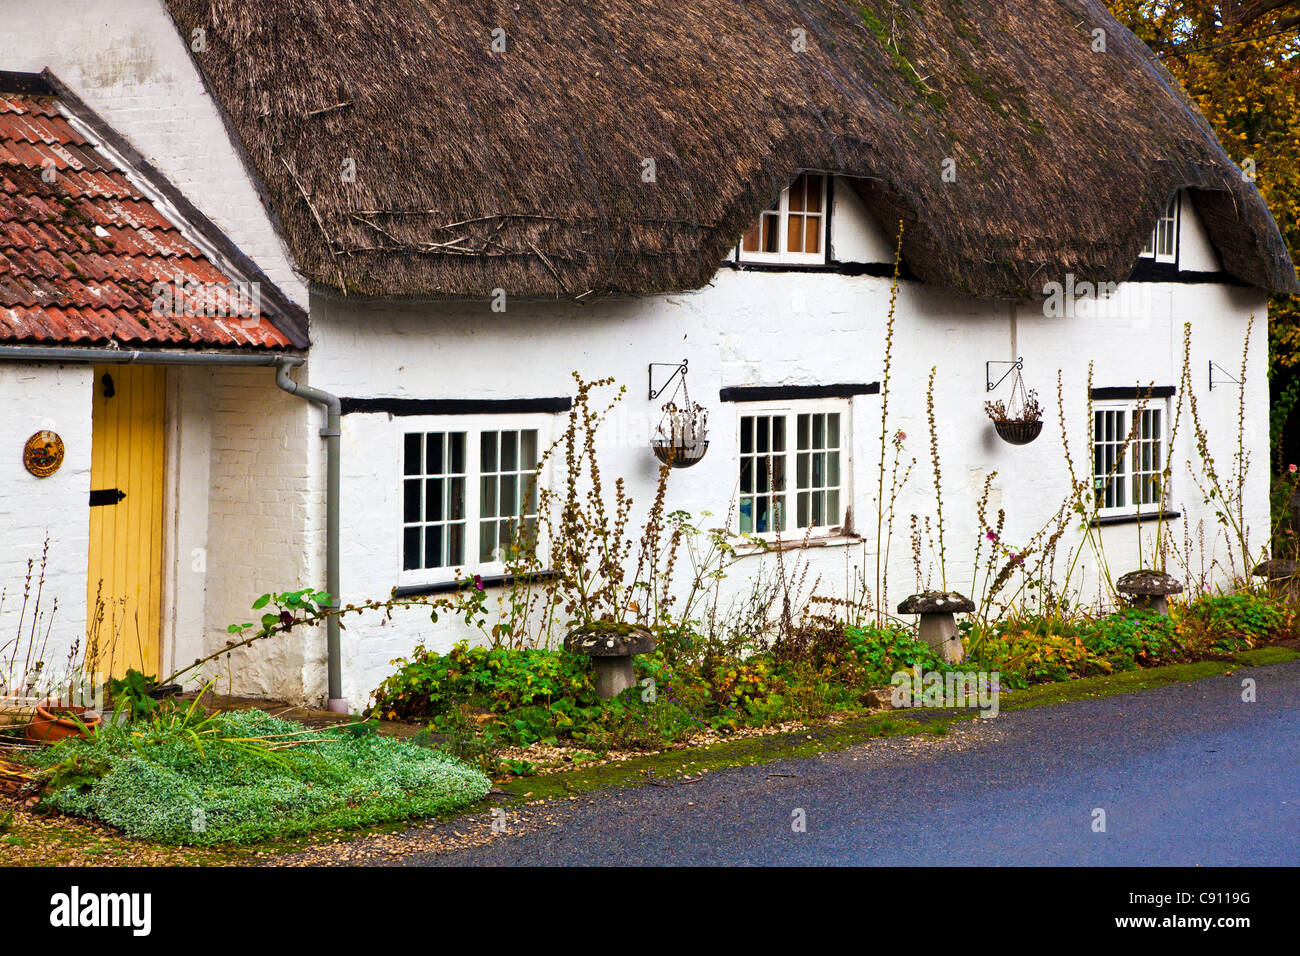 Un anglais typique chalet chaume dans le village de Clyffe Pypard Wiltshire, England, UK Banque D'Images